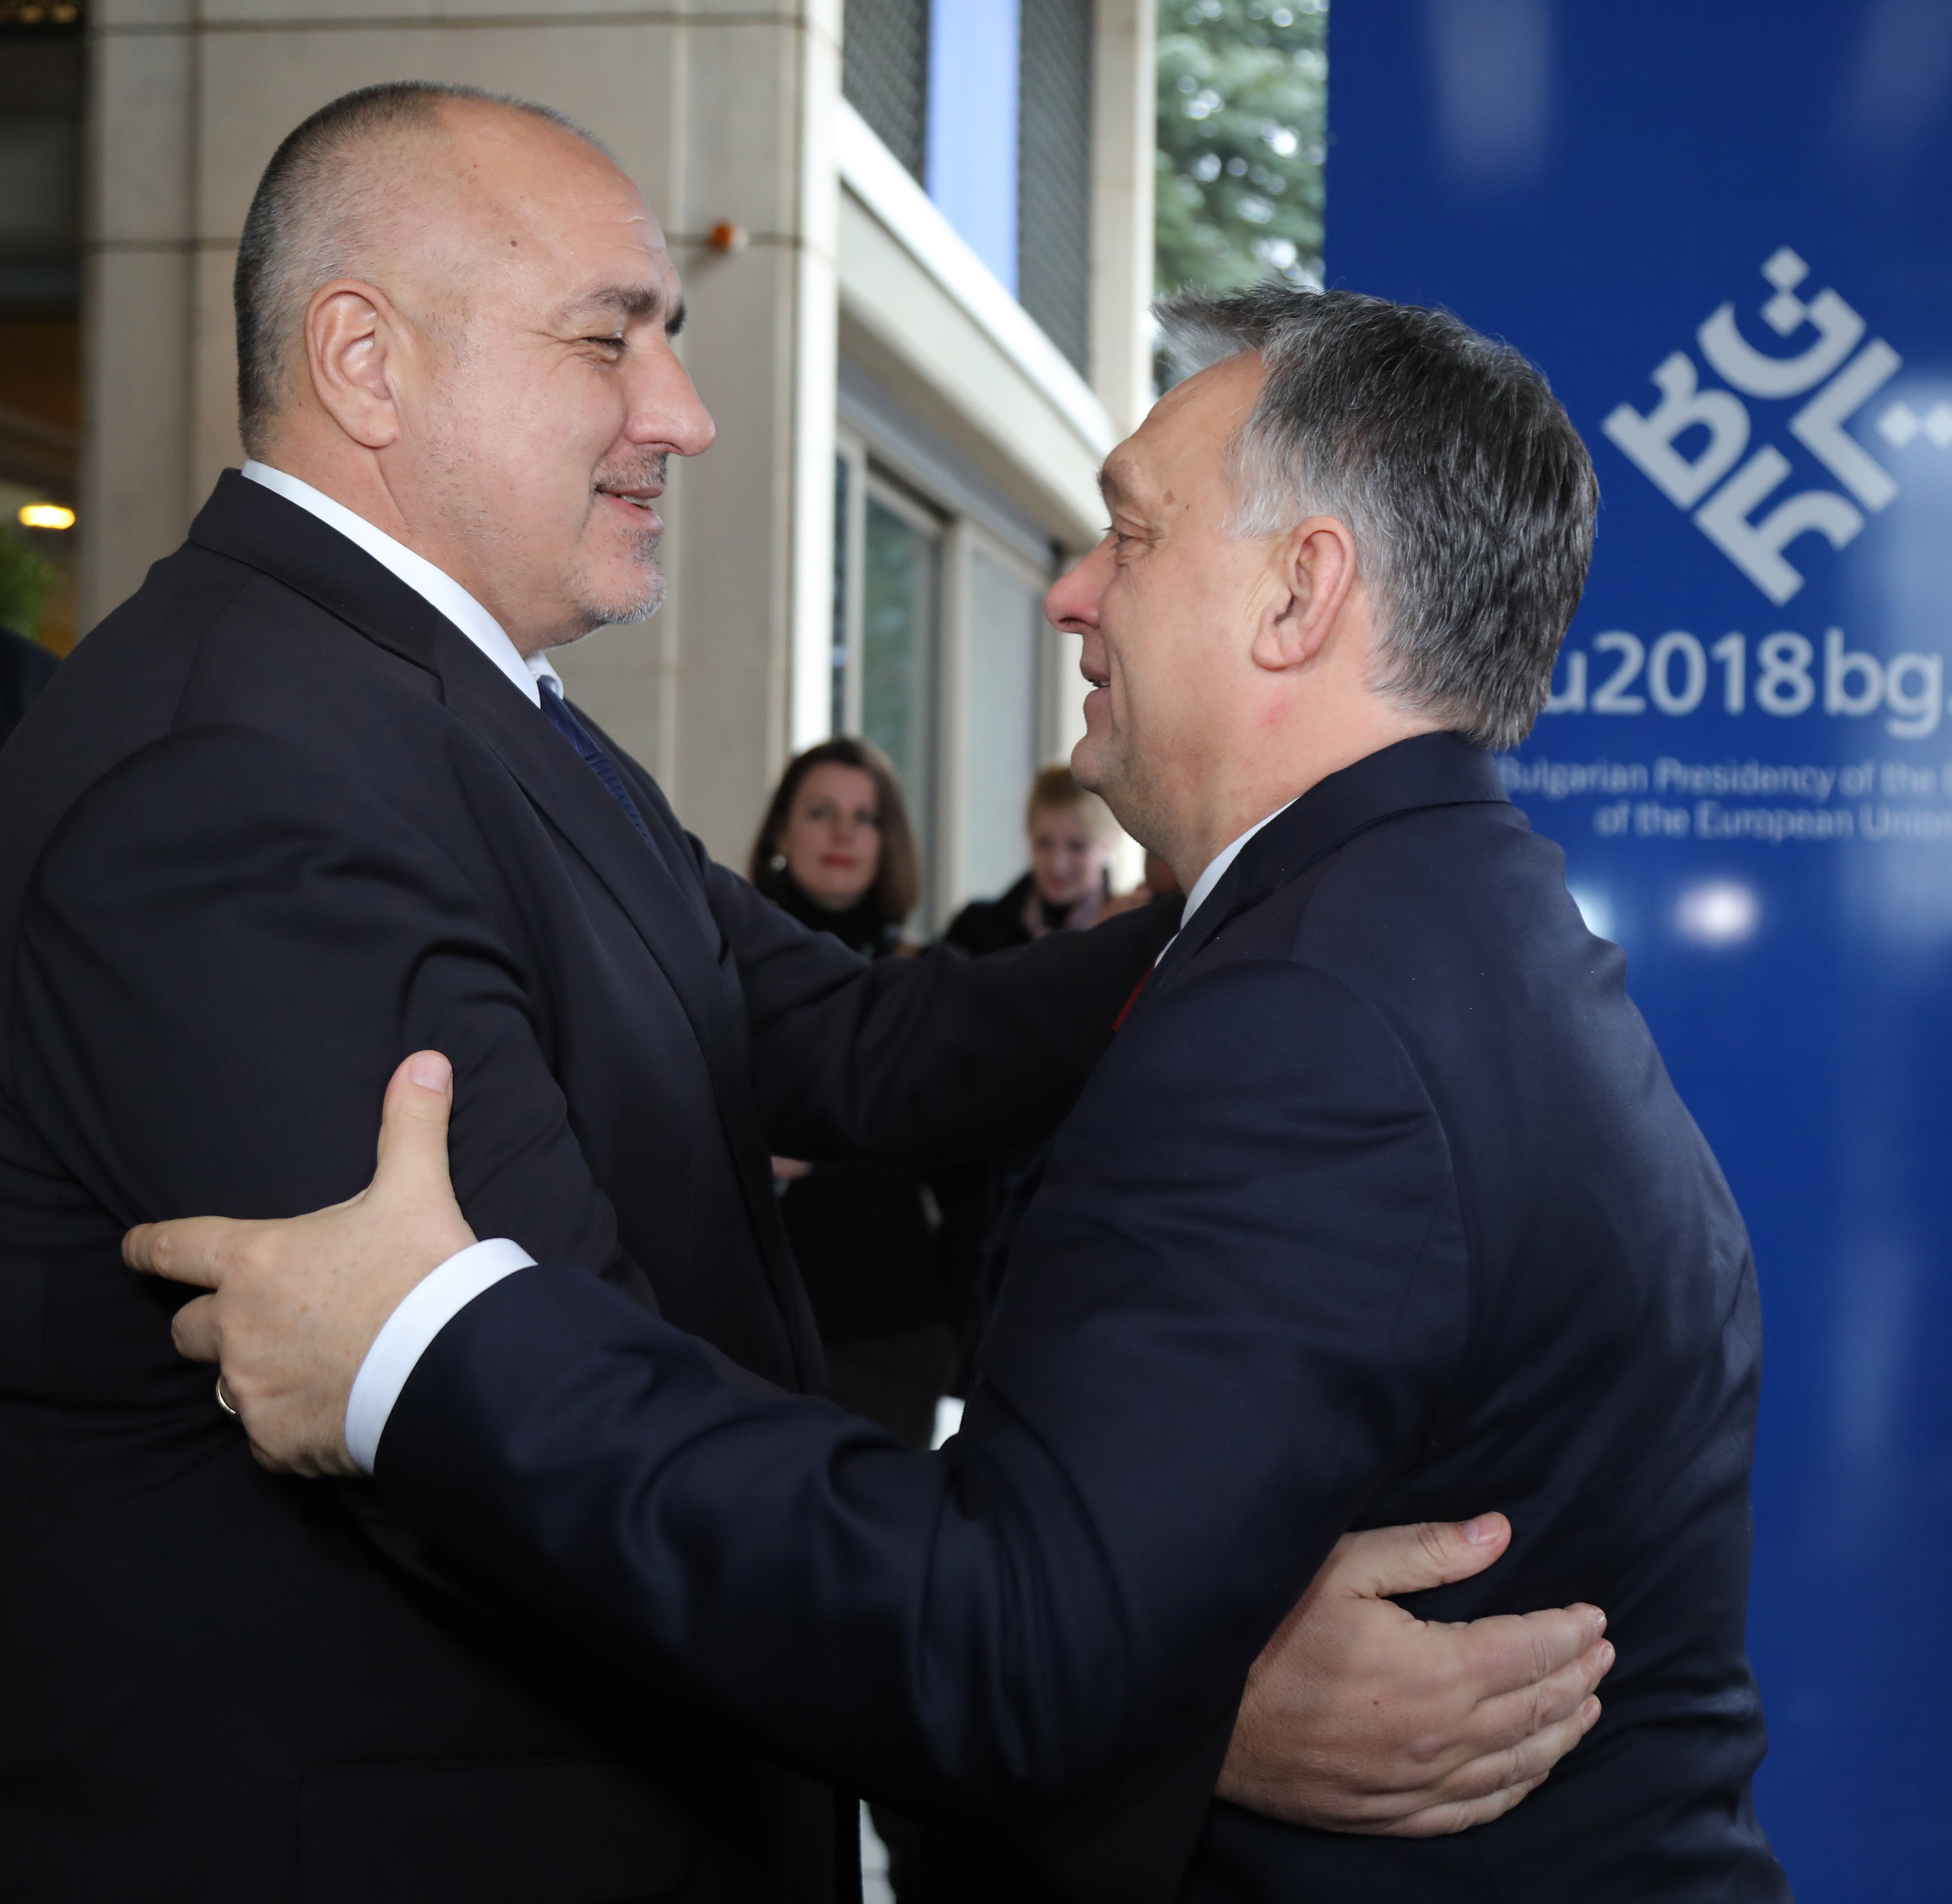 Bojko Boriszov és Orbán Viktor szófiai találkozója 2018-ban.